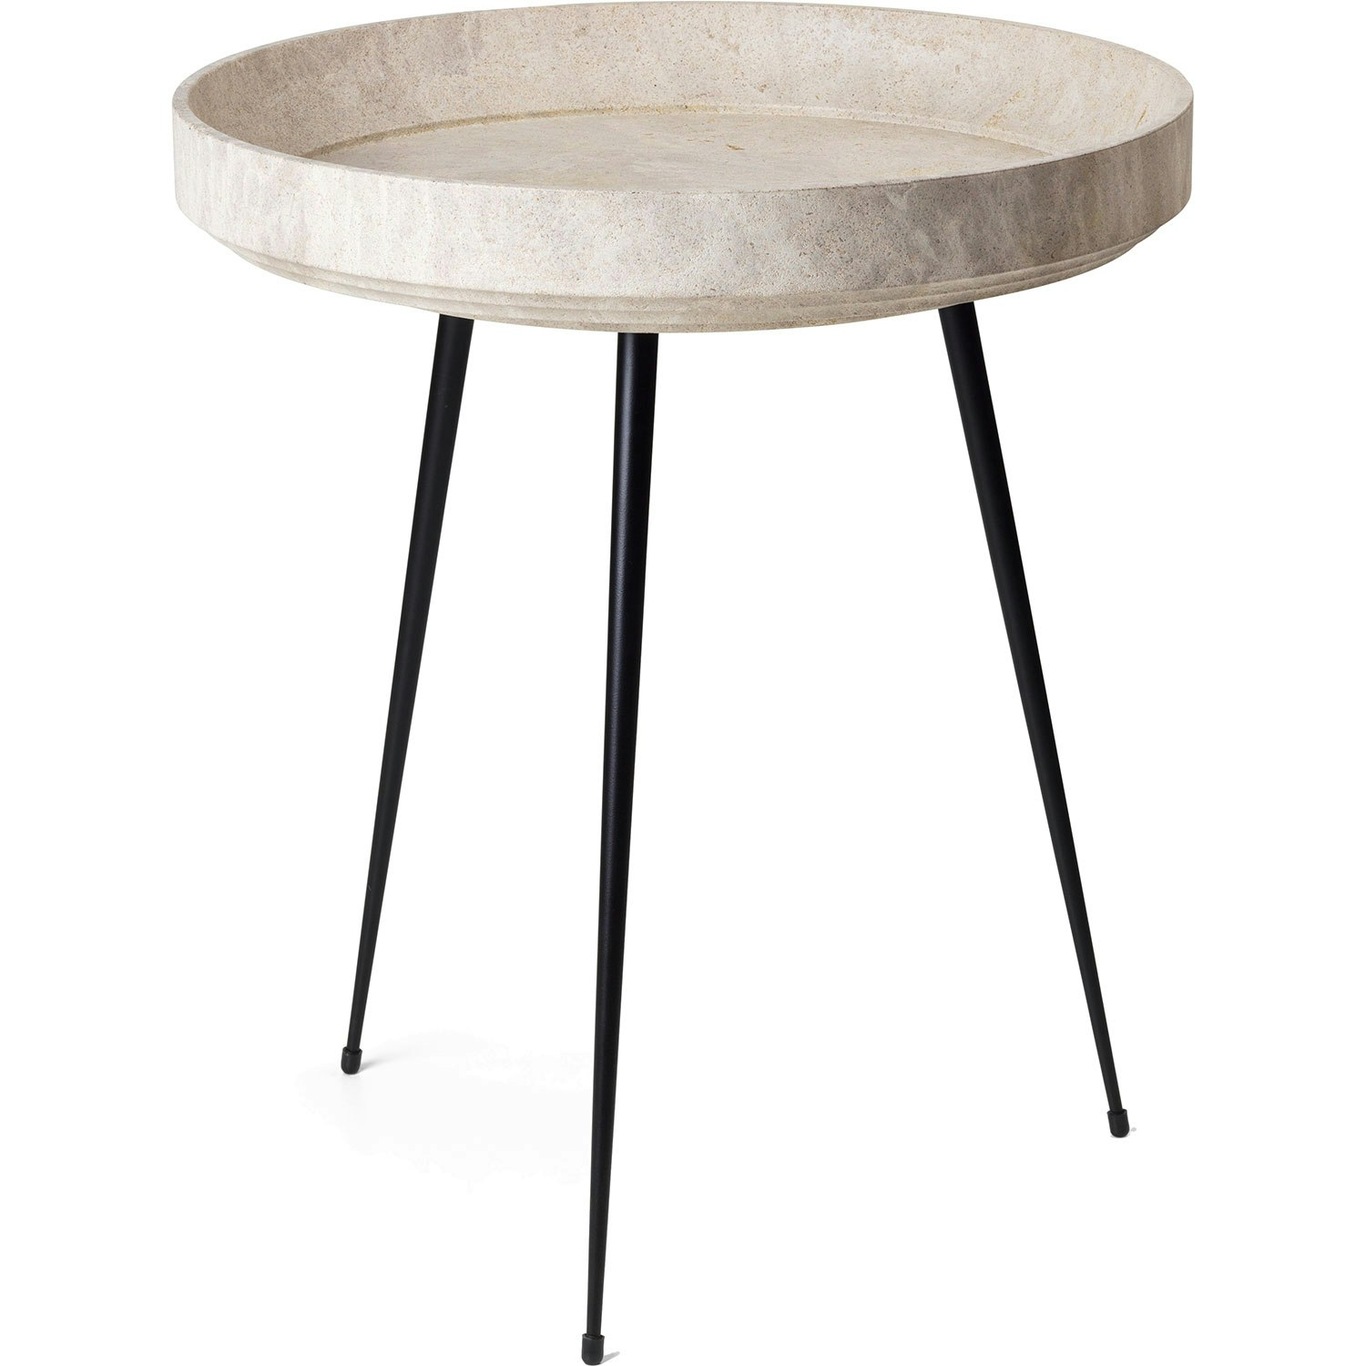 Bowl Coffee Table Medium Ø 46 cm, Wood Waste Grey